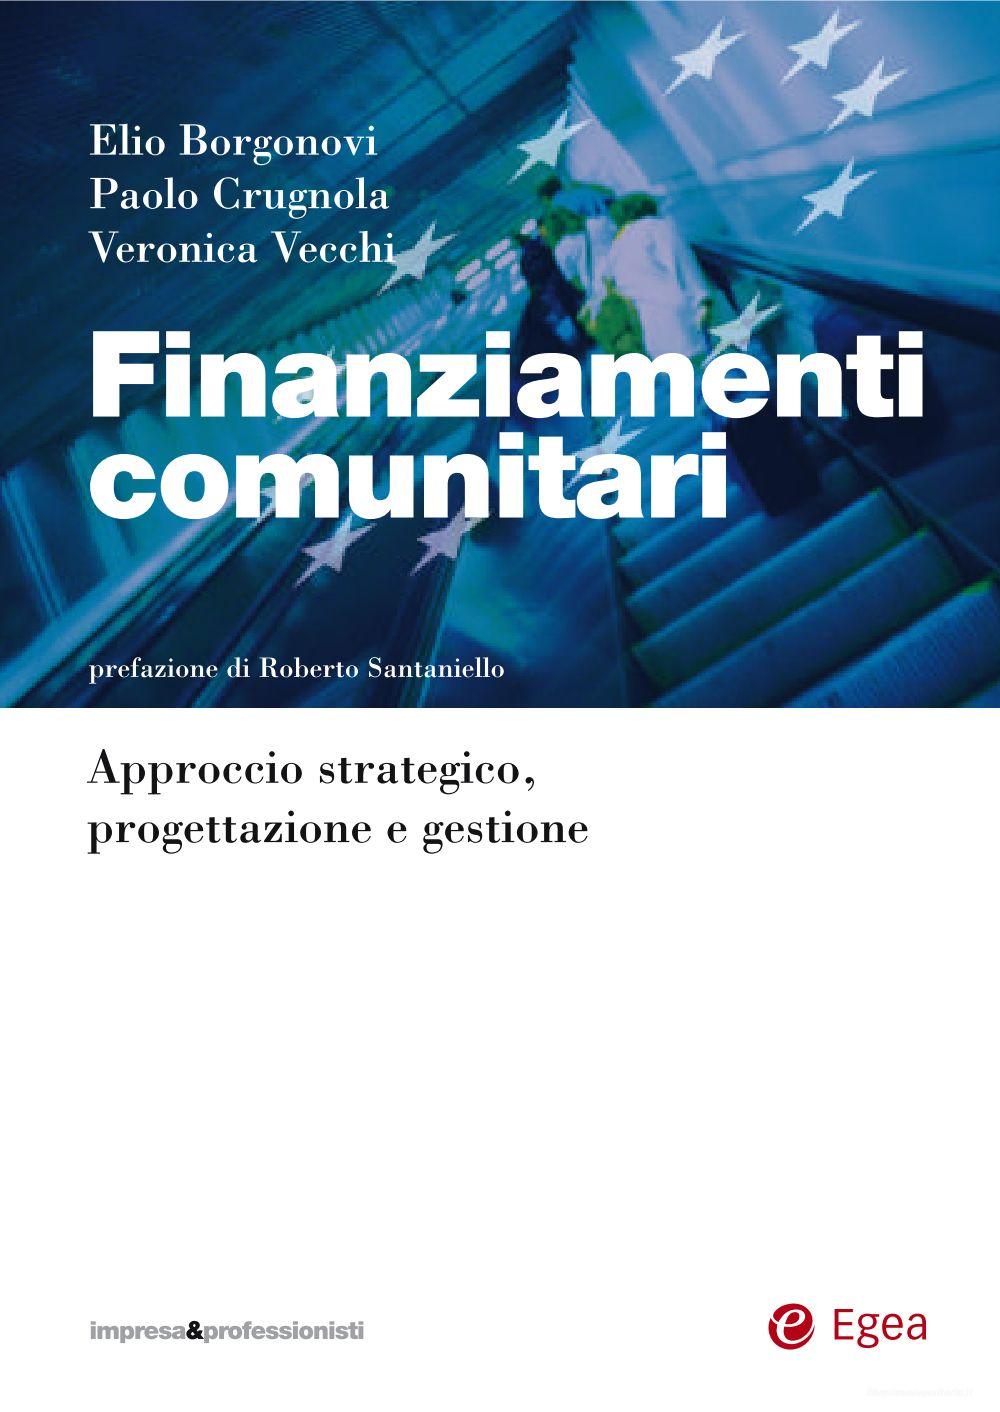 Ebook Finanziamenti comunitari di Veronica Vecchi, Paolo Crugnola, Elio Borgonovi edito da Egea